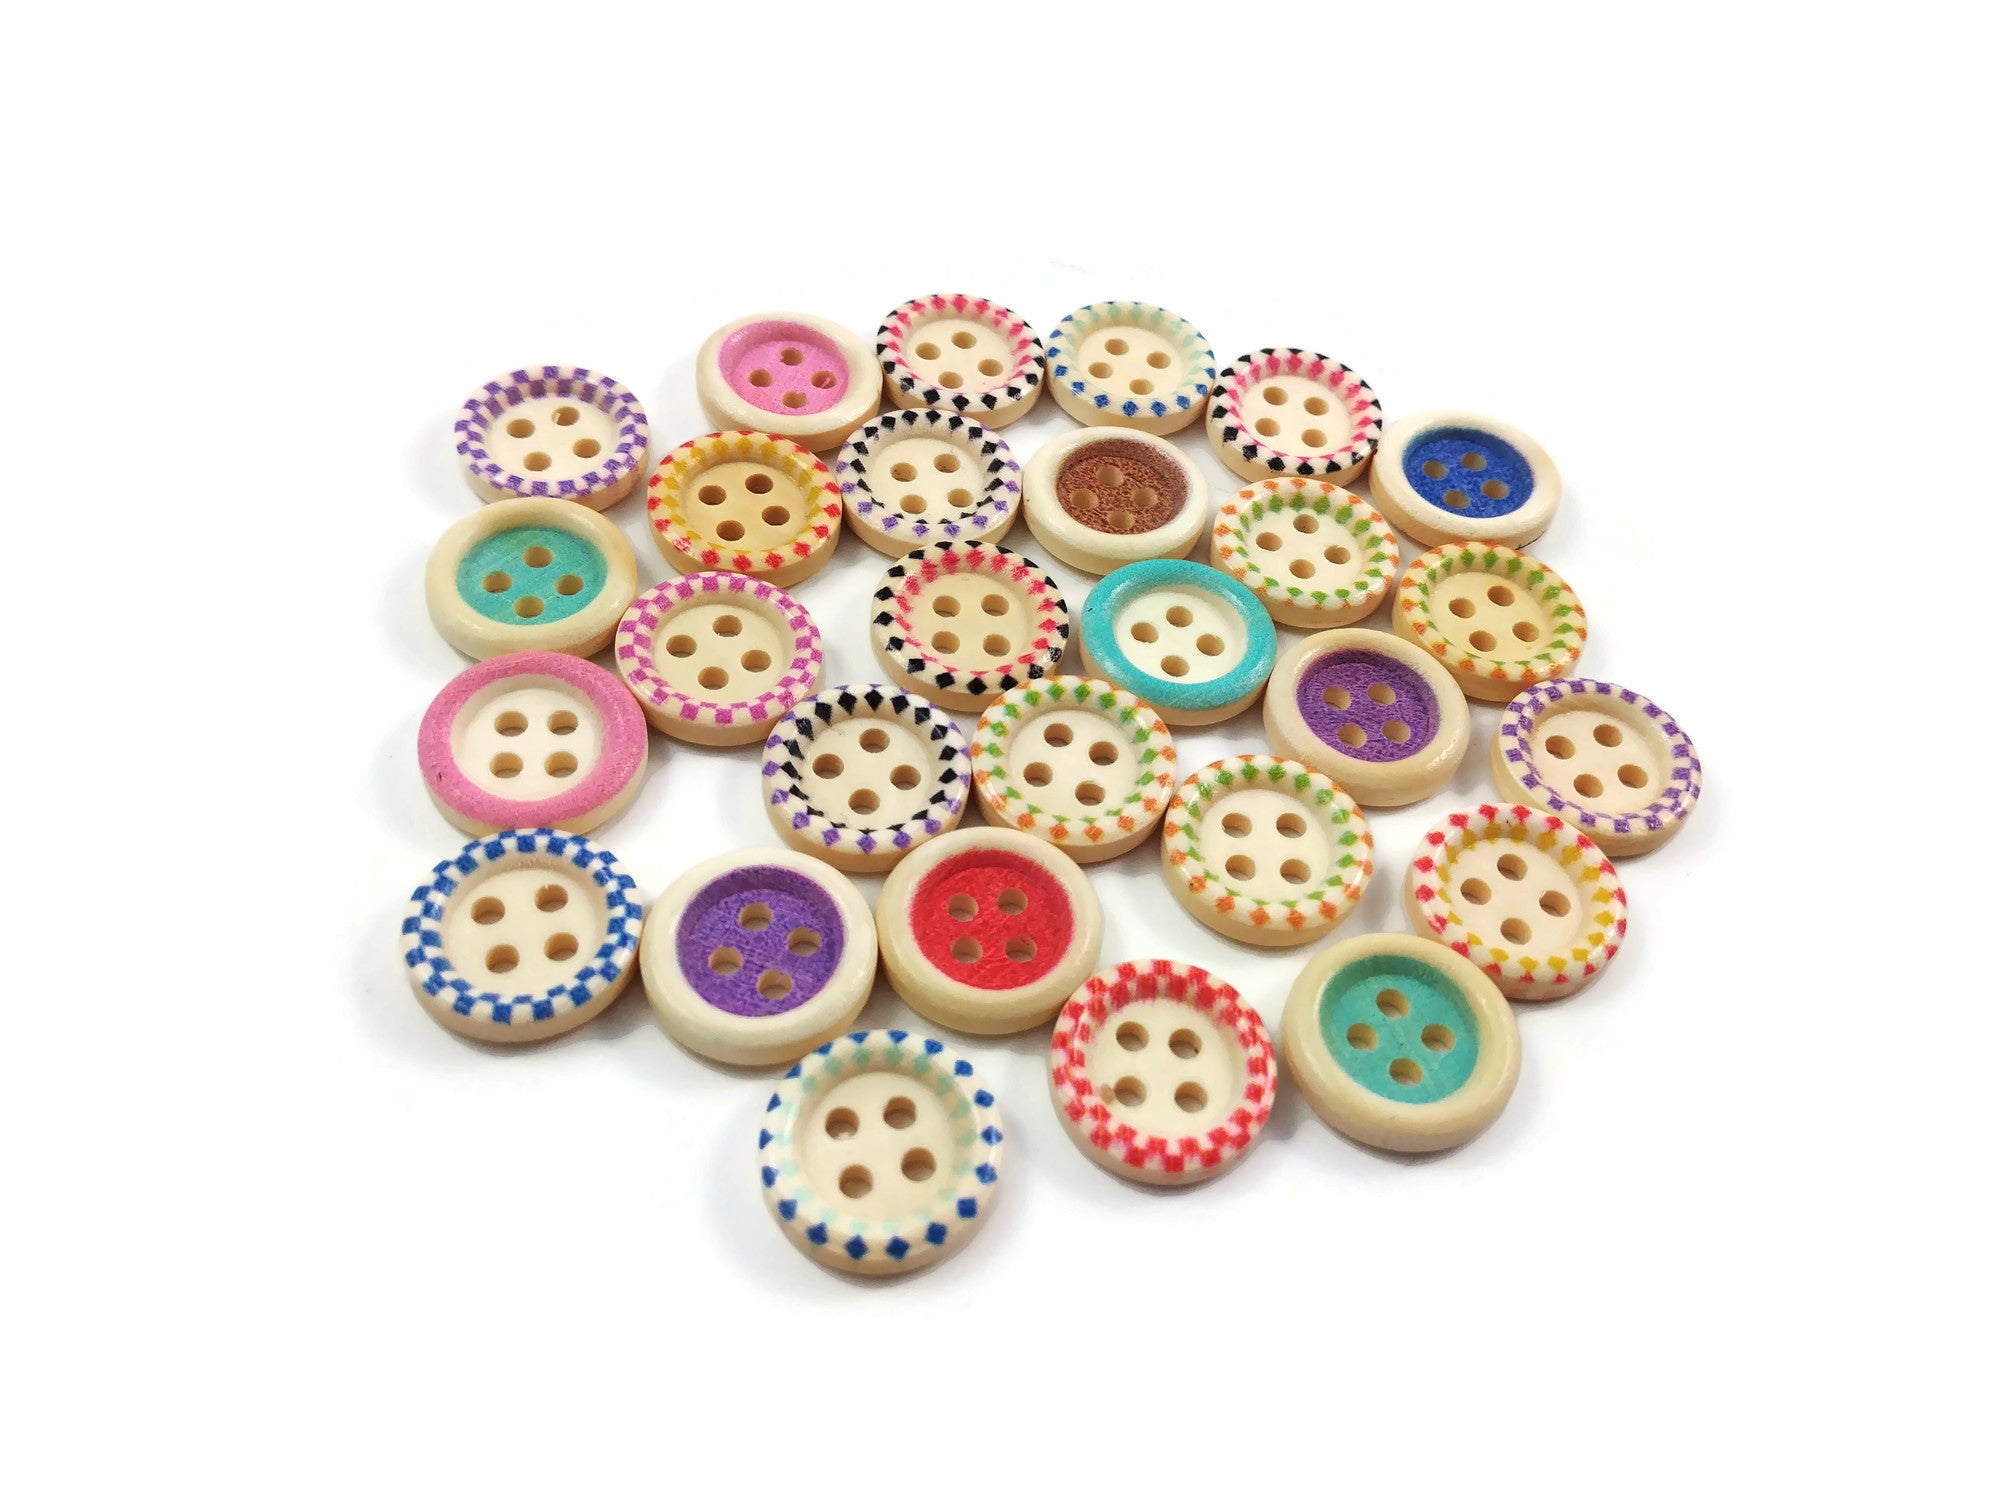 Cheap 100pcs 3/4inch Wooden Buttons Mixed Pattern Flower Shape